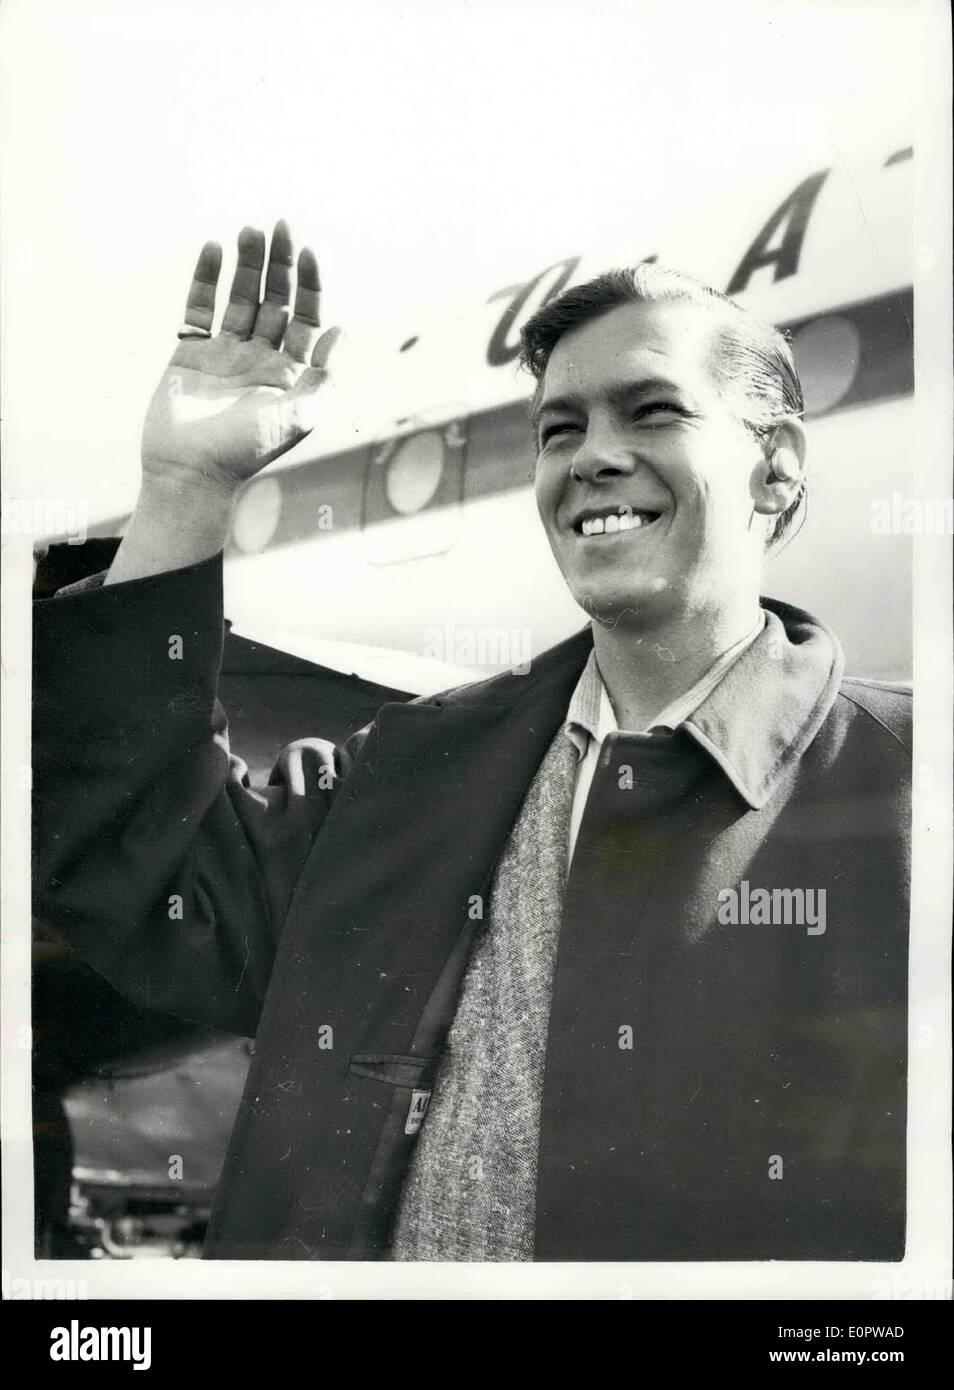 Mar 03, 1957 - Johnnie ray arriva: La foto mostra il famoso crooner, Johnnie Ray, raffigurato all aeroporto di Londra ieri su arrivò dall'America per tre settimane di tour provinciale e due settimane di stagione al London Palladium. Foto Stock